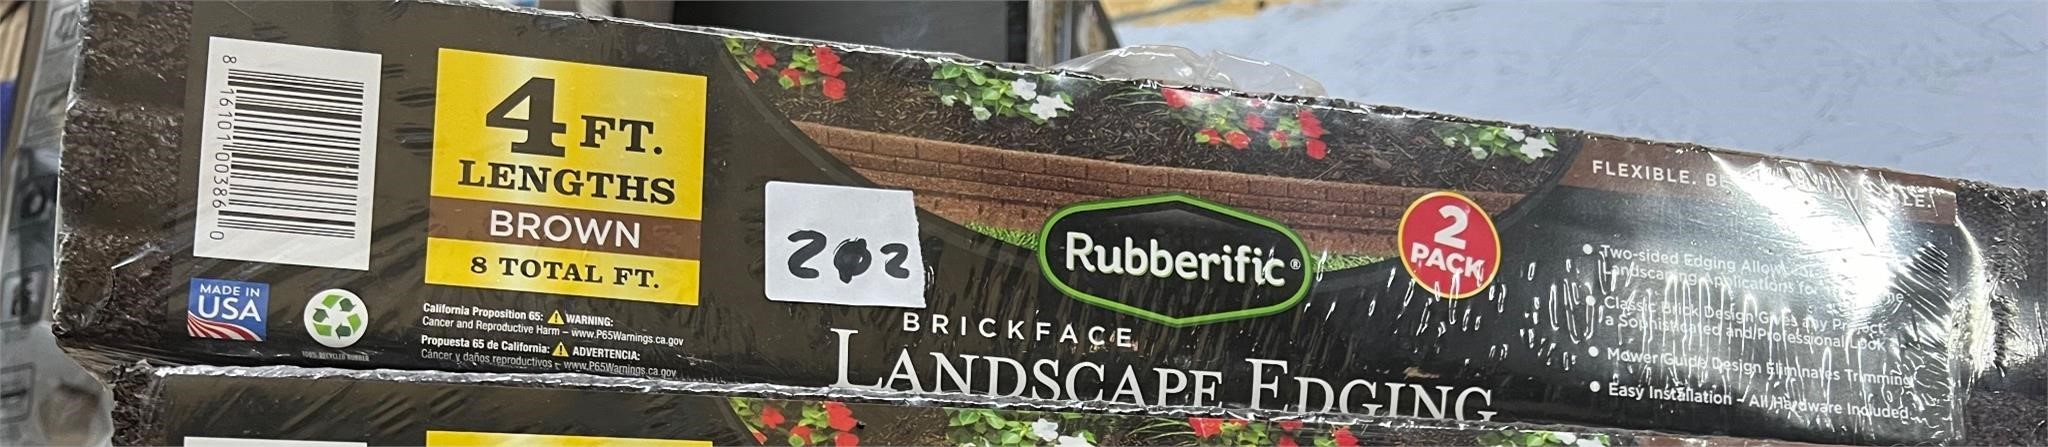 Rubberific BrickfaceLandscape Edging,2pk-8ft Total